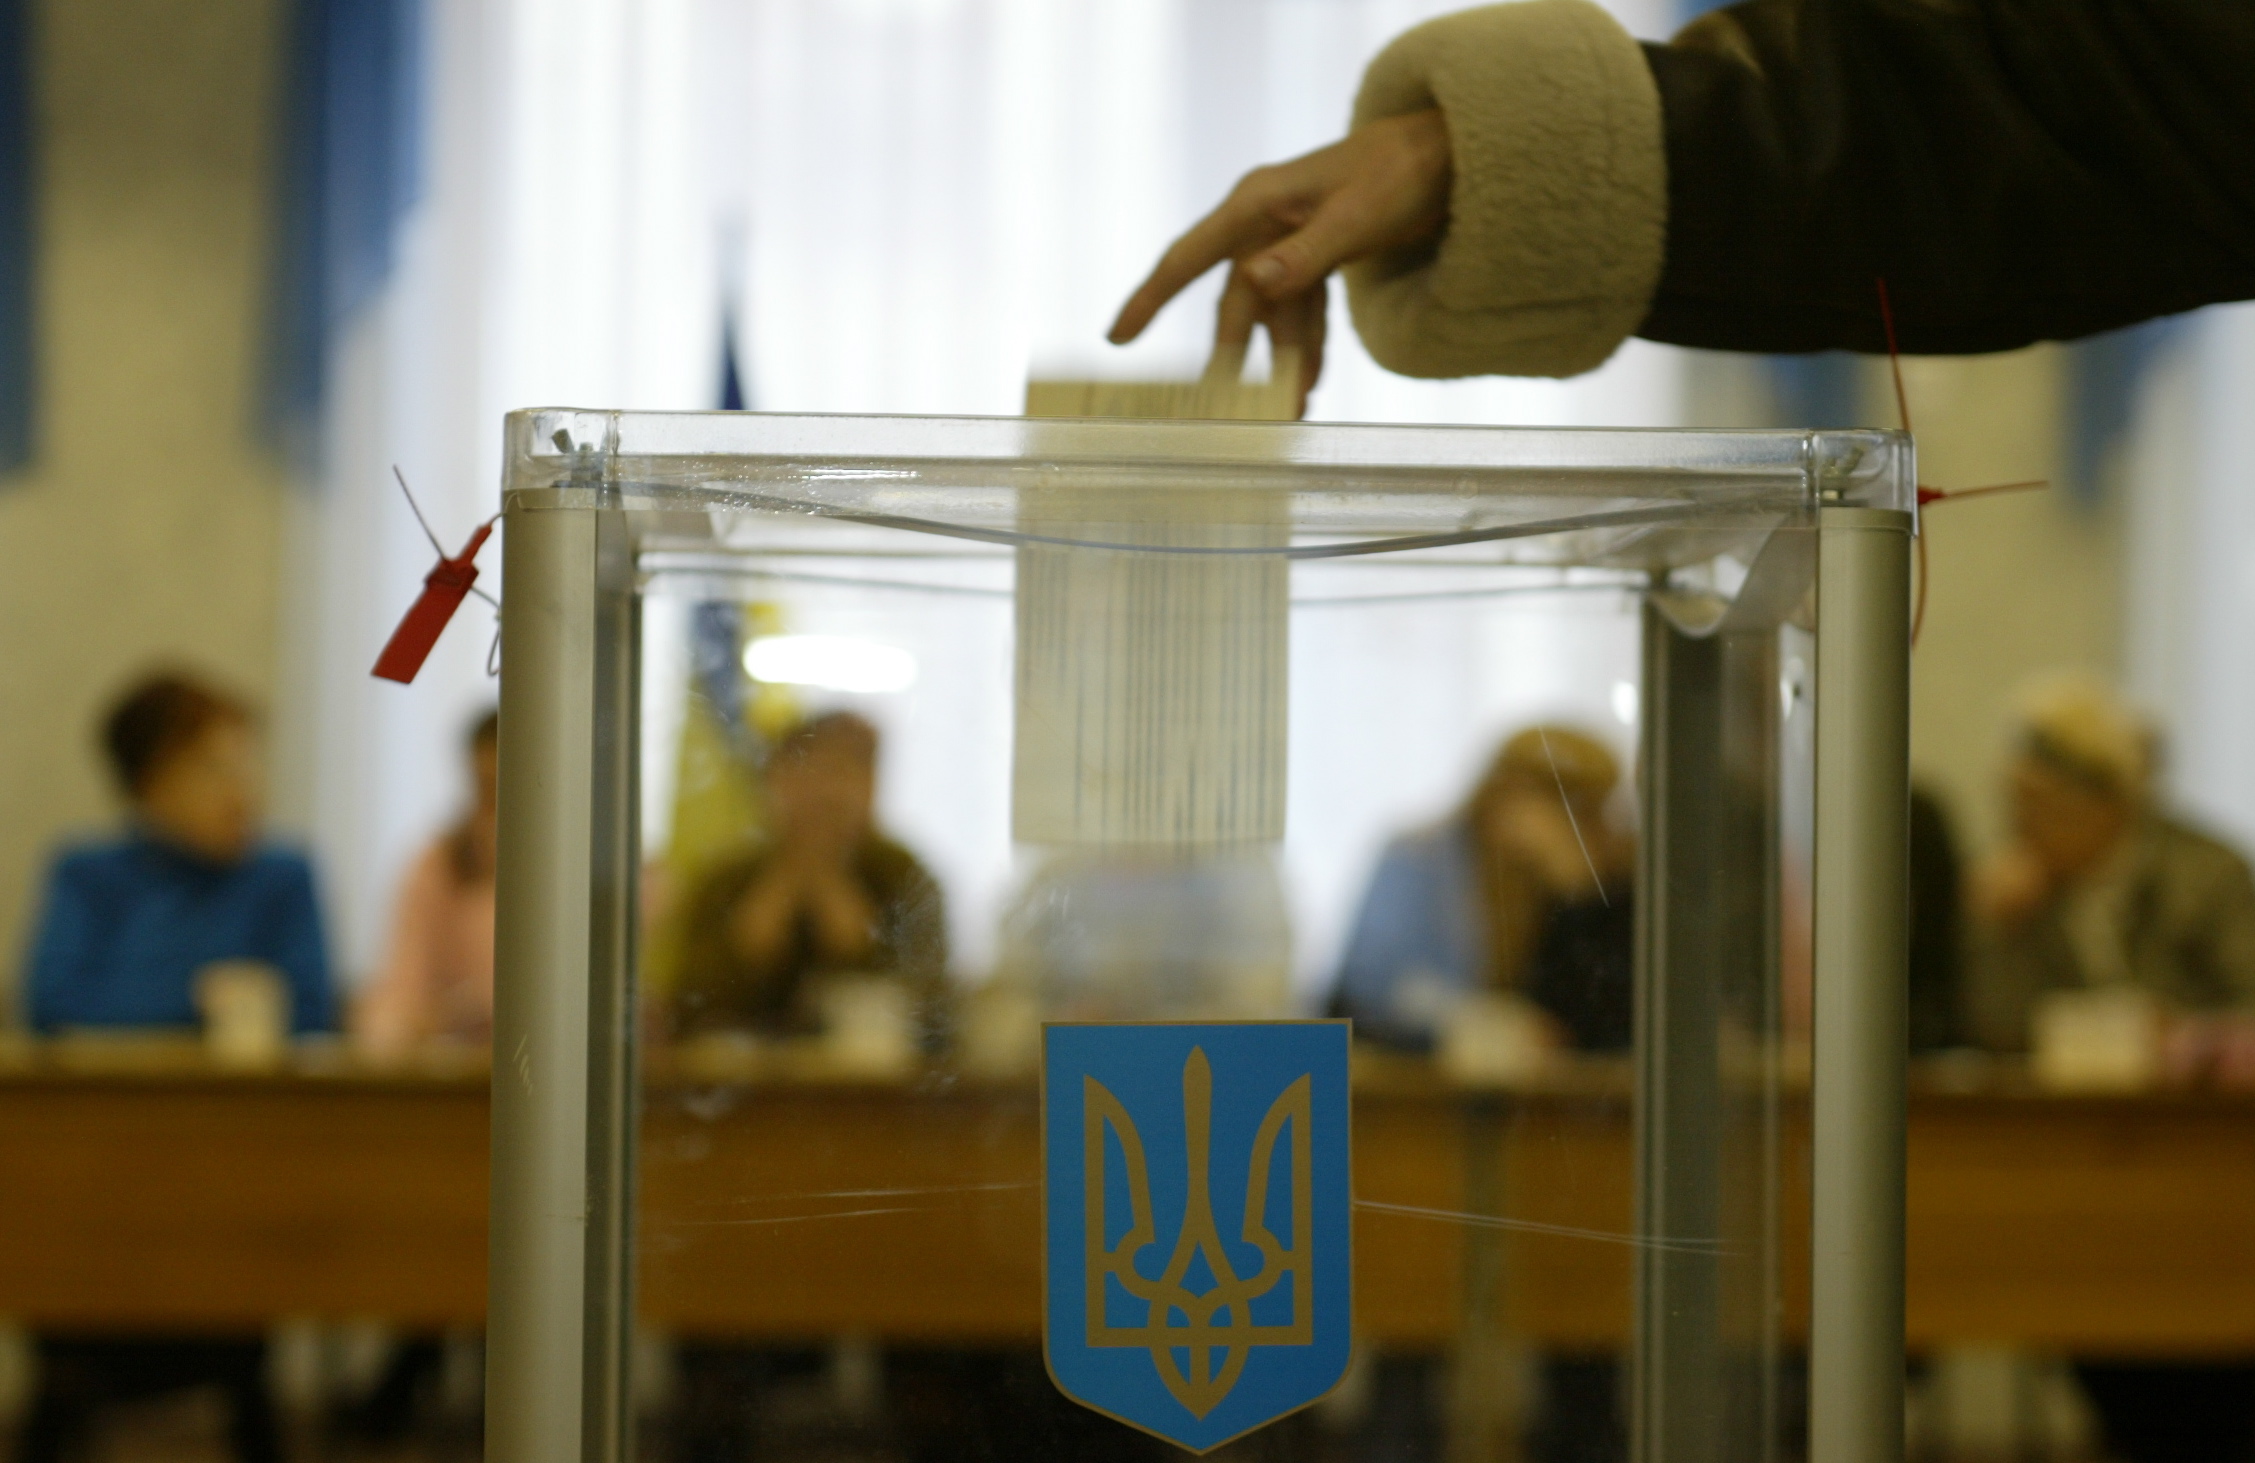 Комітет виборців України: на восьми запорізьких дільницях – жодного спостерігача, в цілому по країні вкрай мала кількість спостерігачів